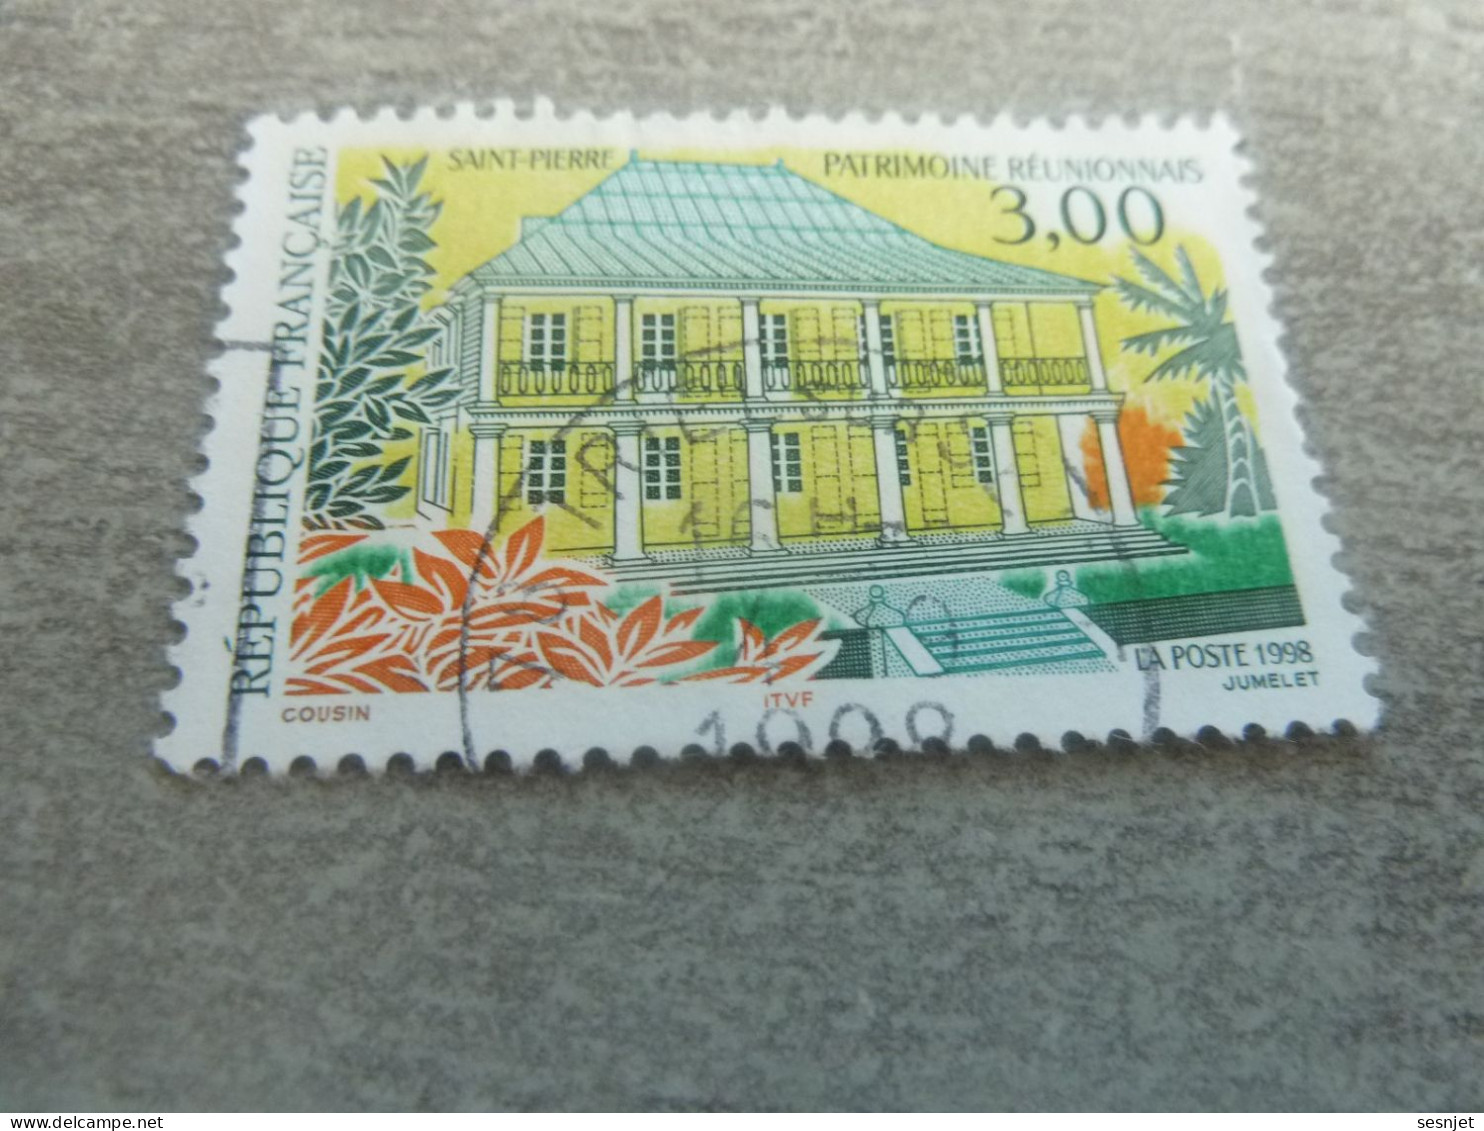 Saint-Pierre - Patrimoine Réunionnais - 3f. - Yt 3144 - Multicolore - Oblitéré - Année 1998 - - Oblitérés